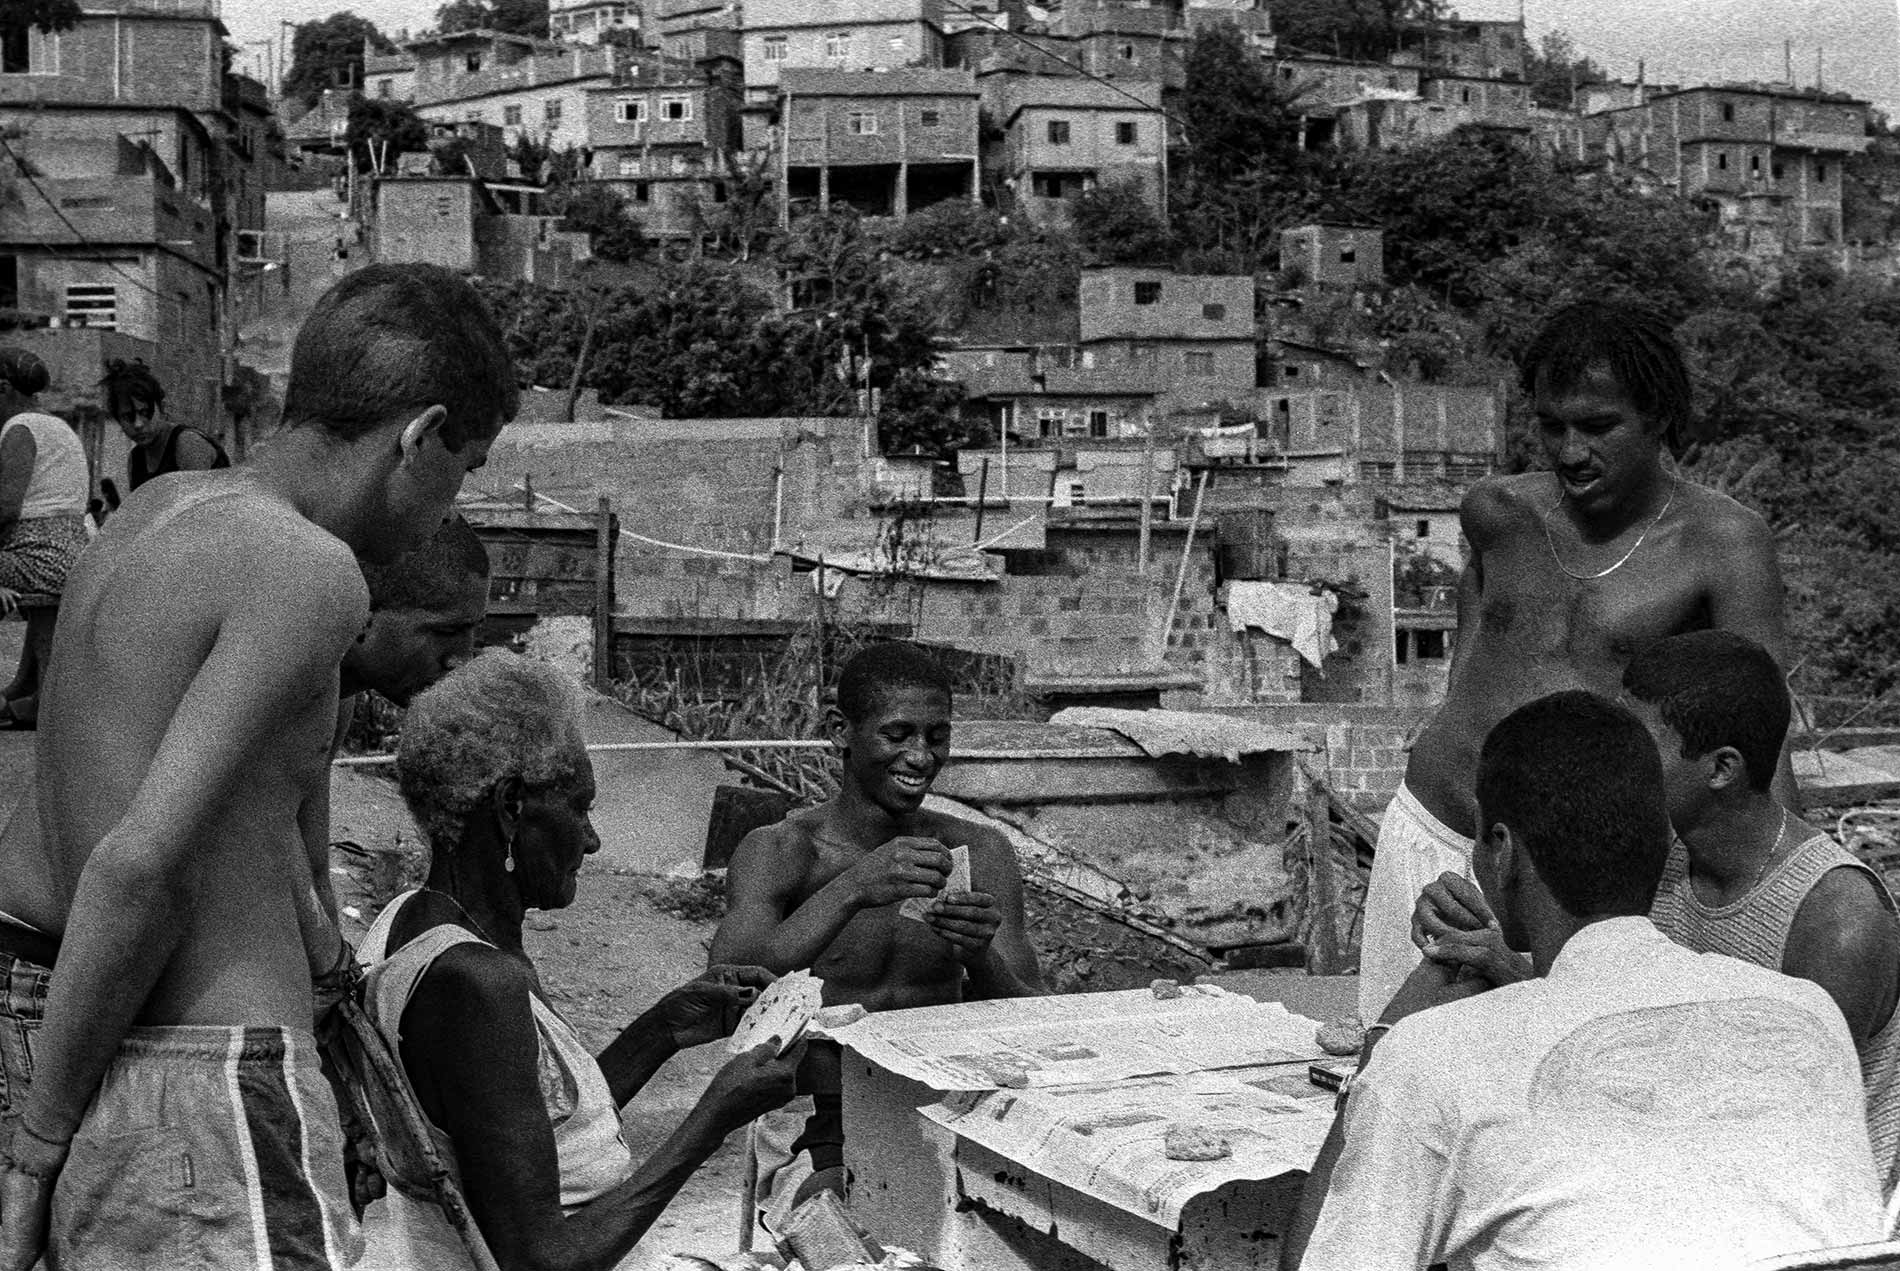 Cards game Rio de Janeiro favela